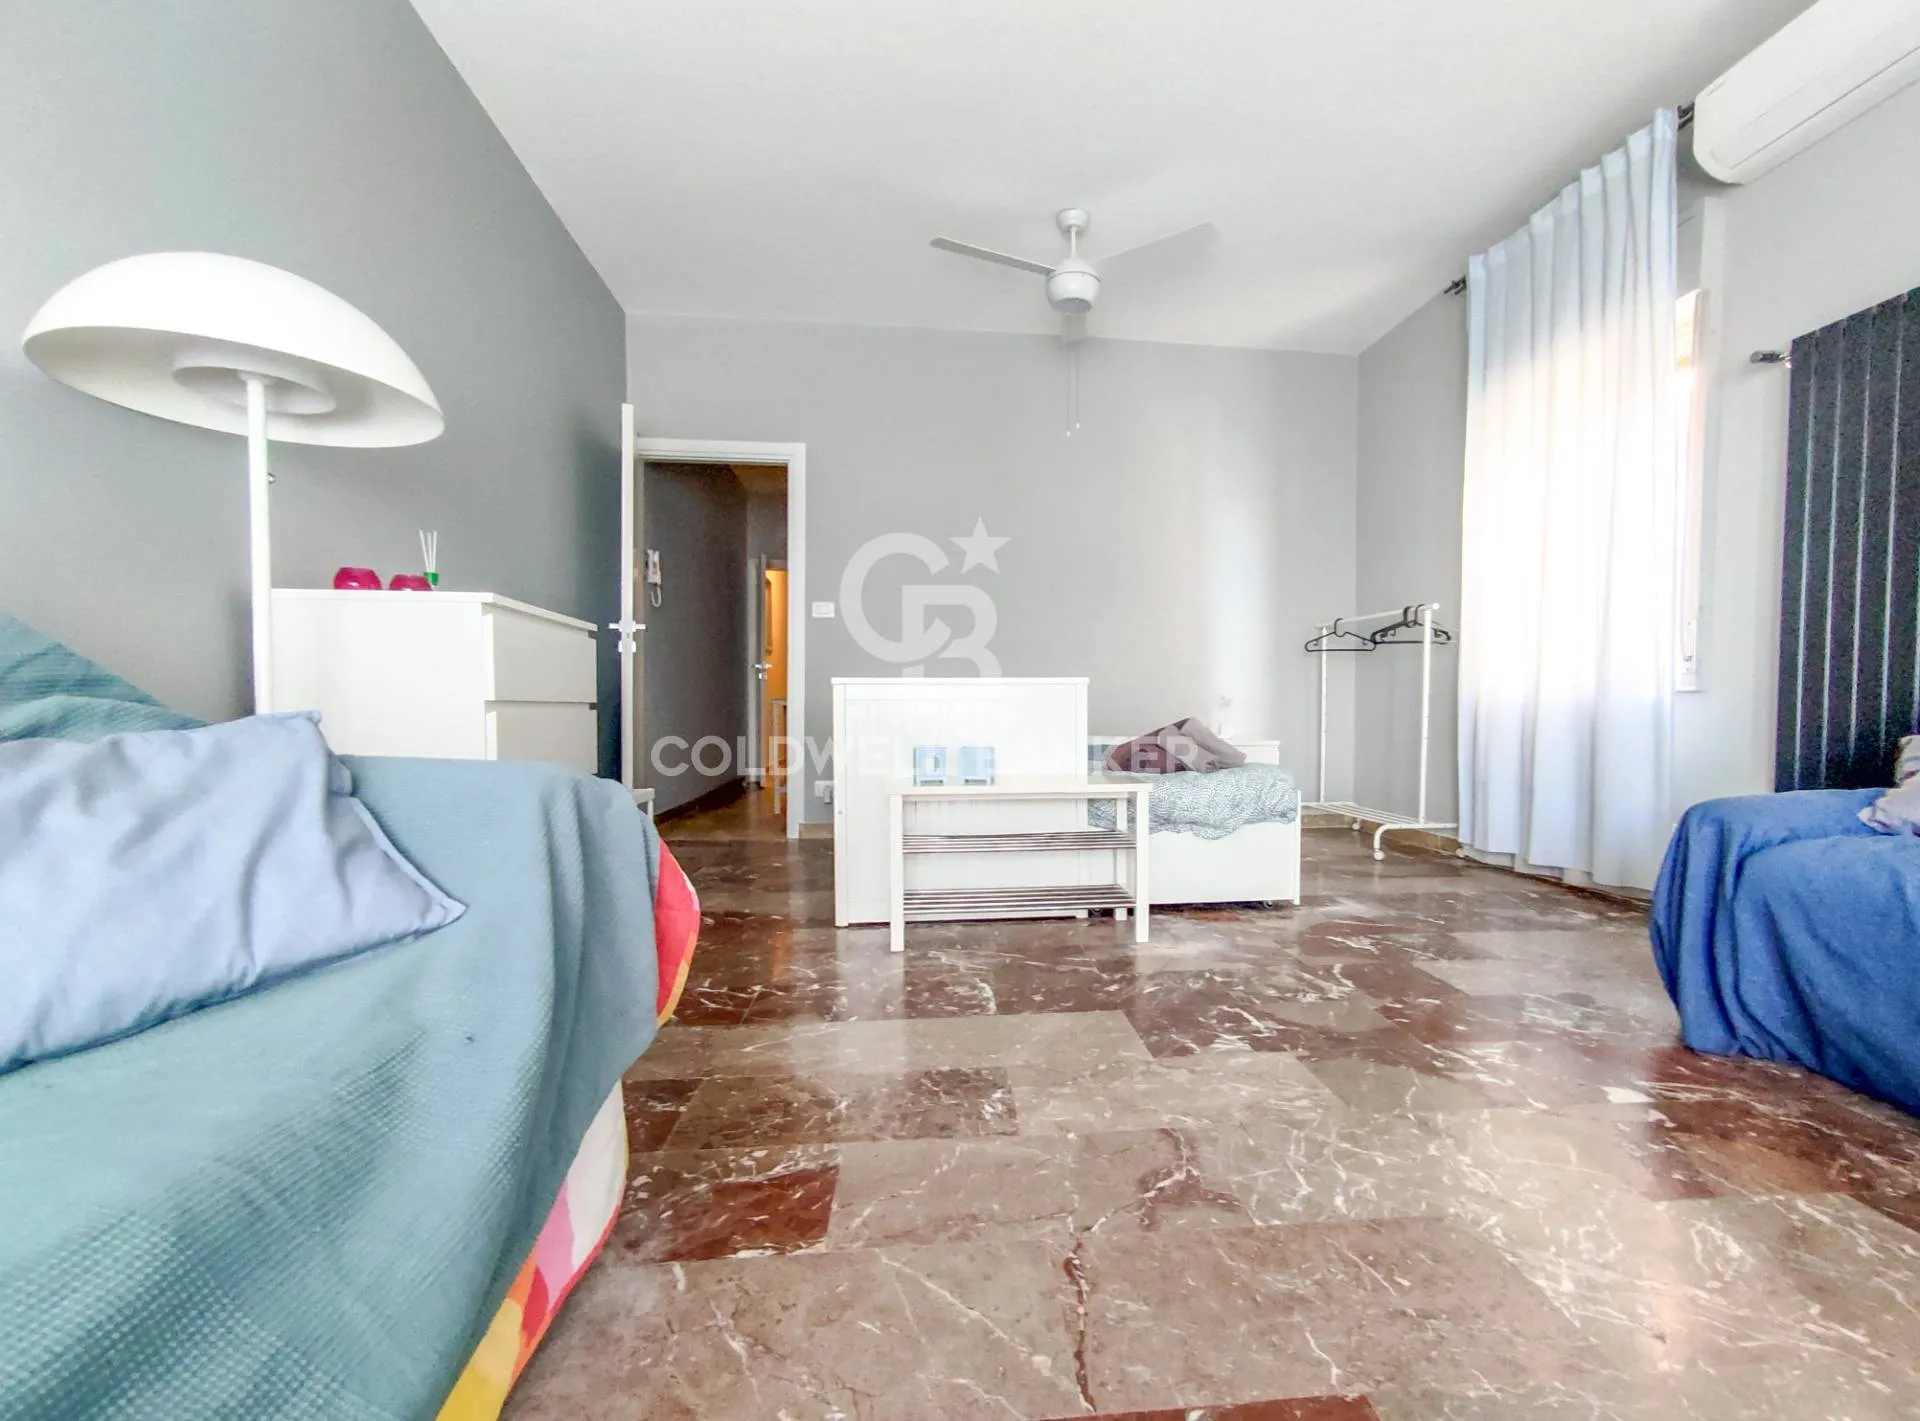 Immagine per Appartamento in vendita a Aci Castello Via Provinciale